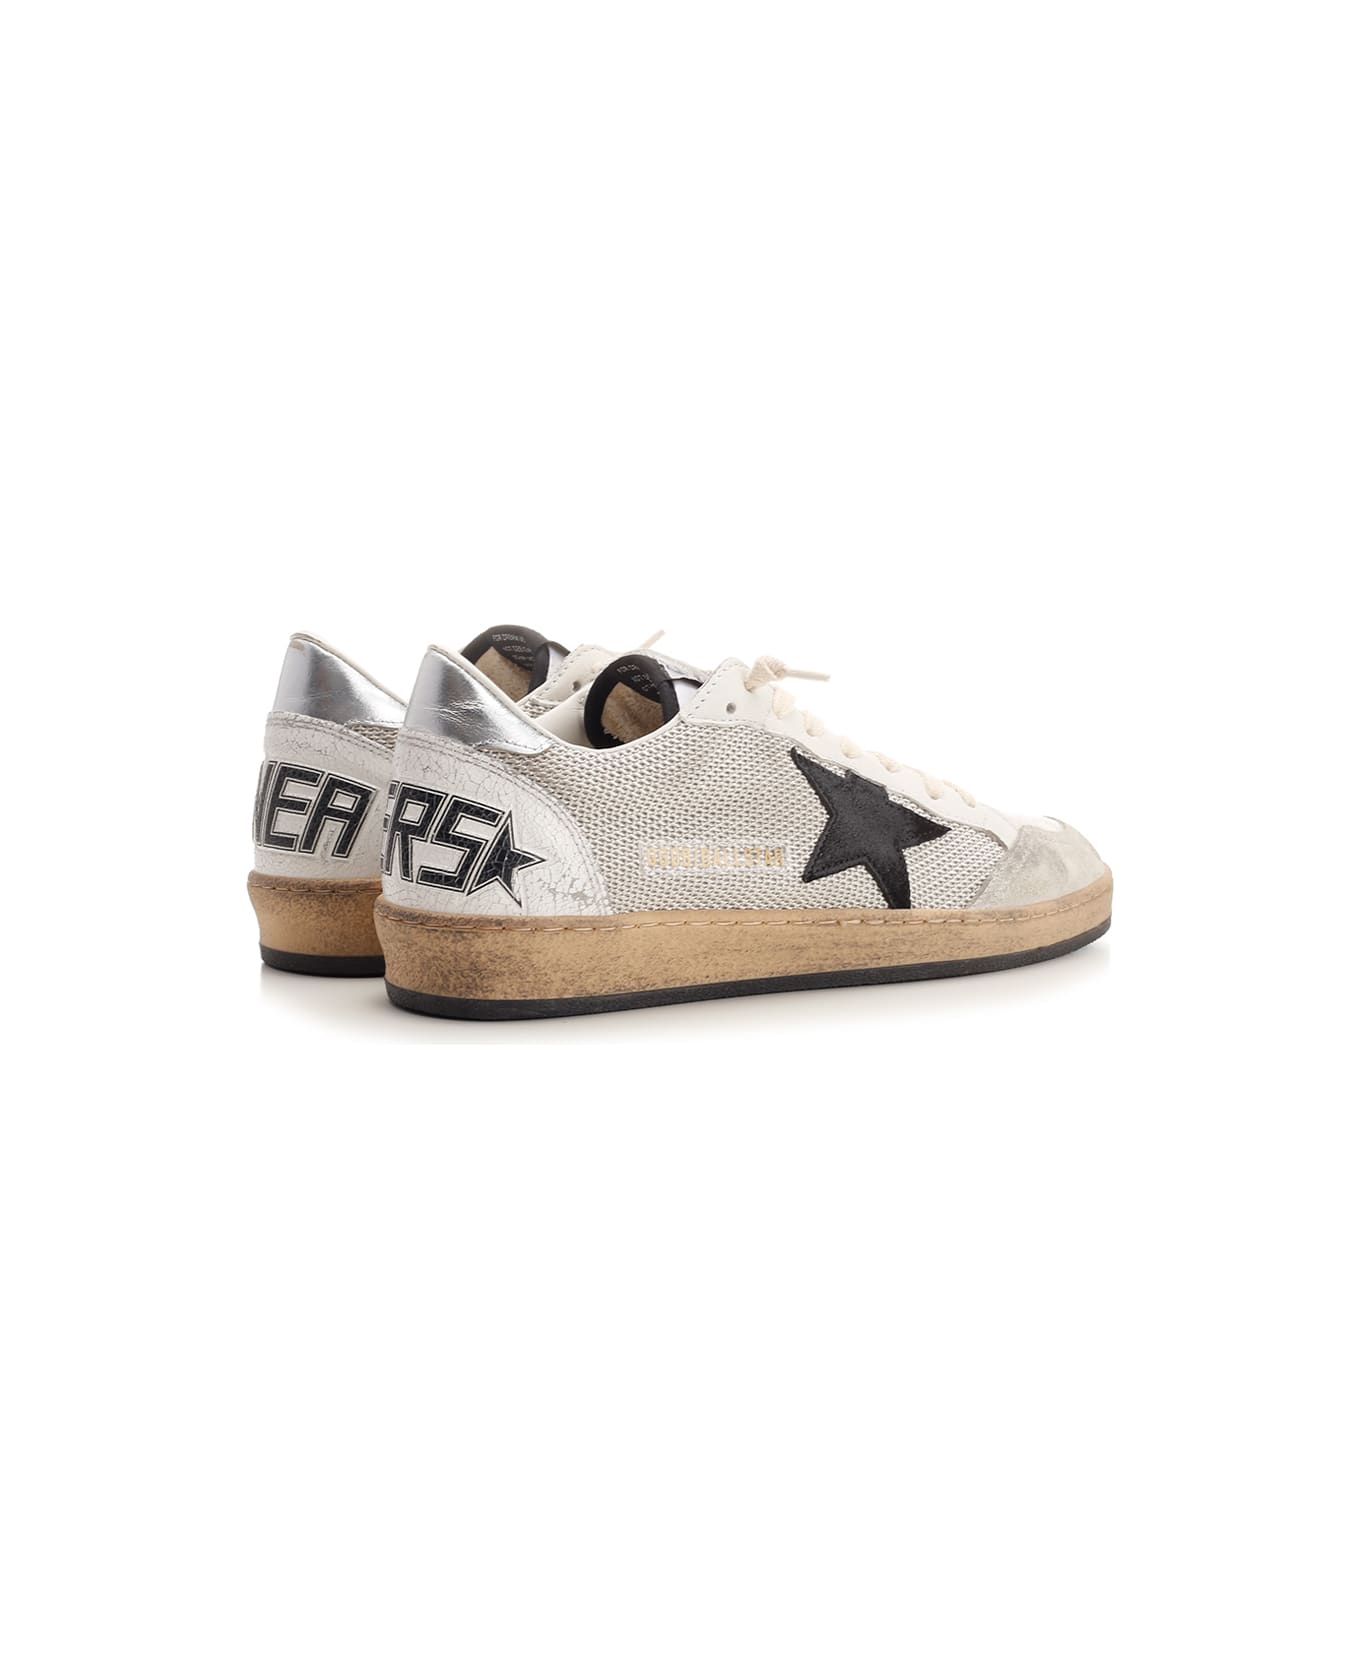 Golden Goose Ball Star Sneakers - Light Silver/Black/White/Silve スニーカー